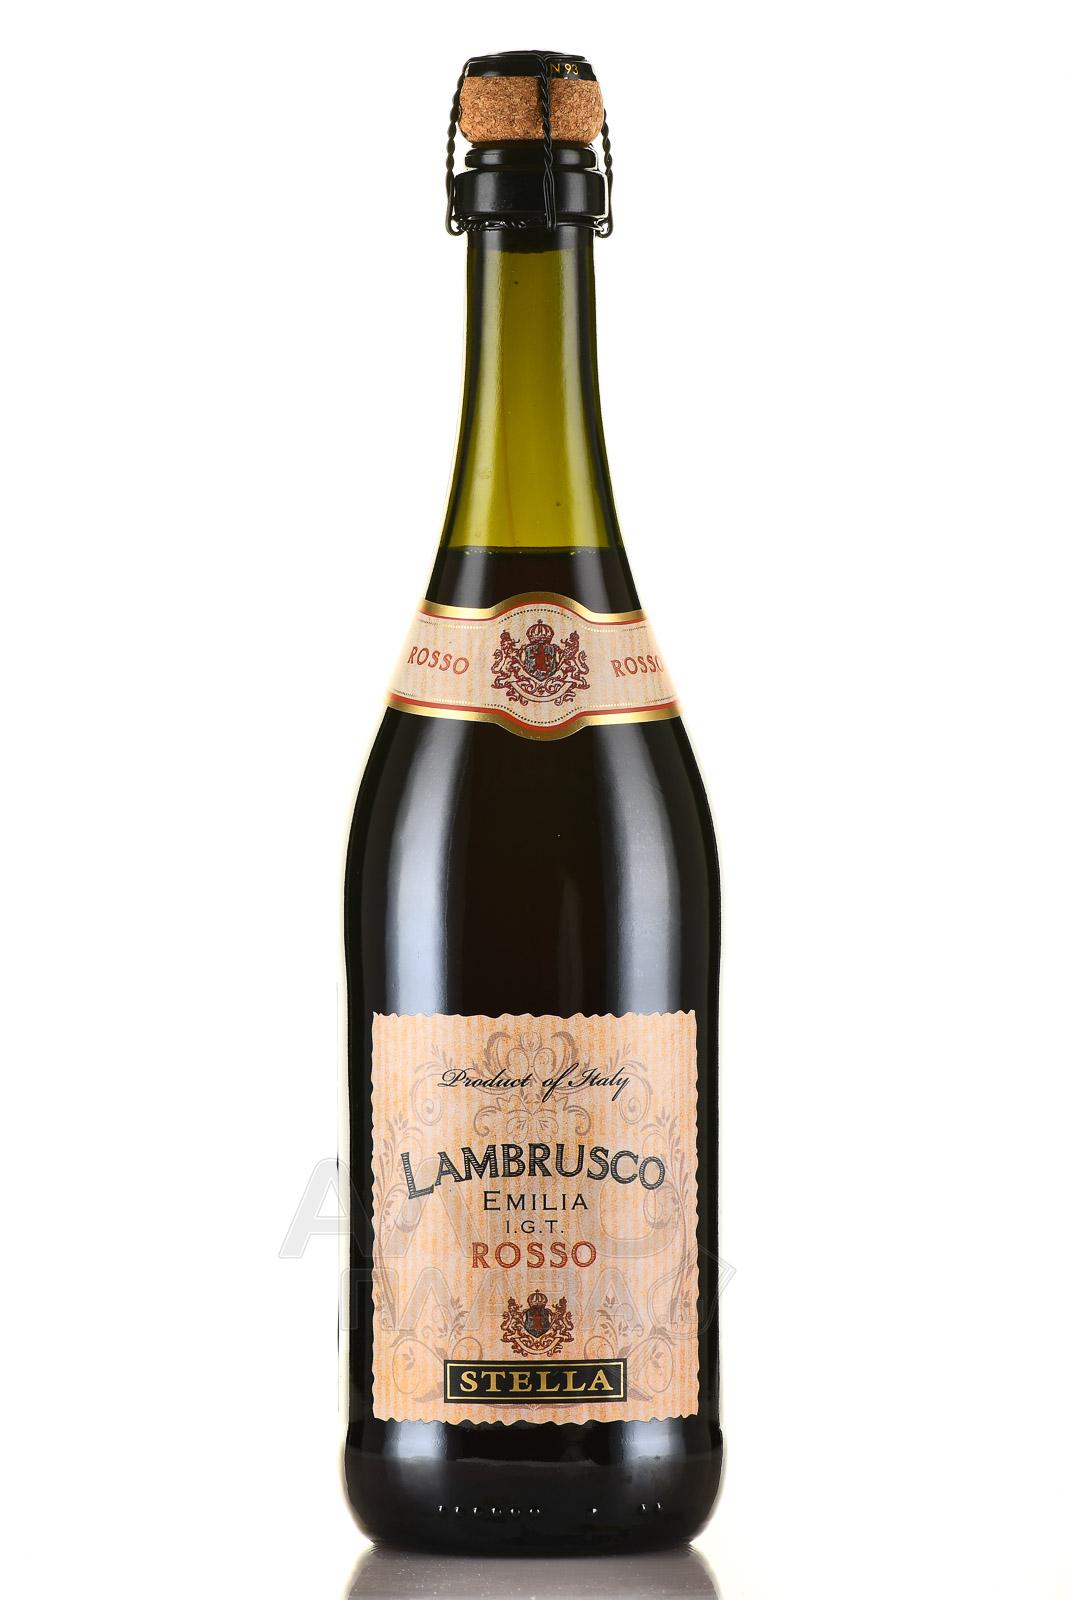 Stella Lambrusco Emilia IGT - вино игристое Ламбруско Эмилия Стелла ИГТ 0.75 л красное полусладкое